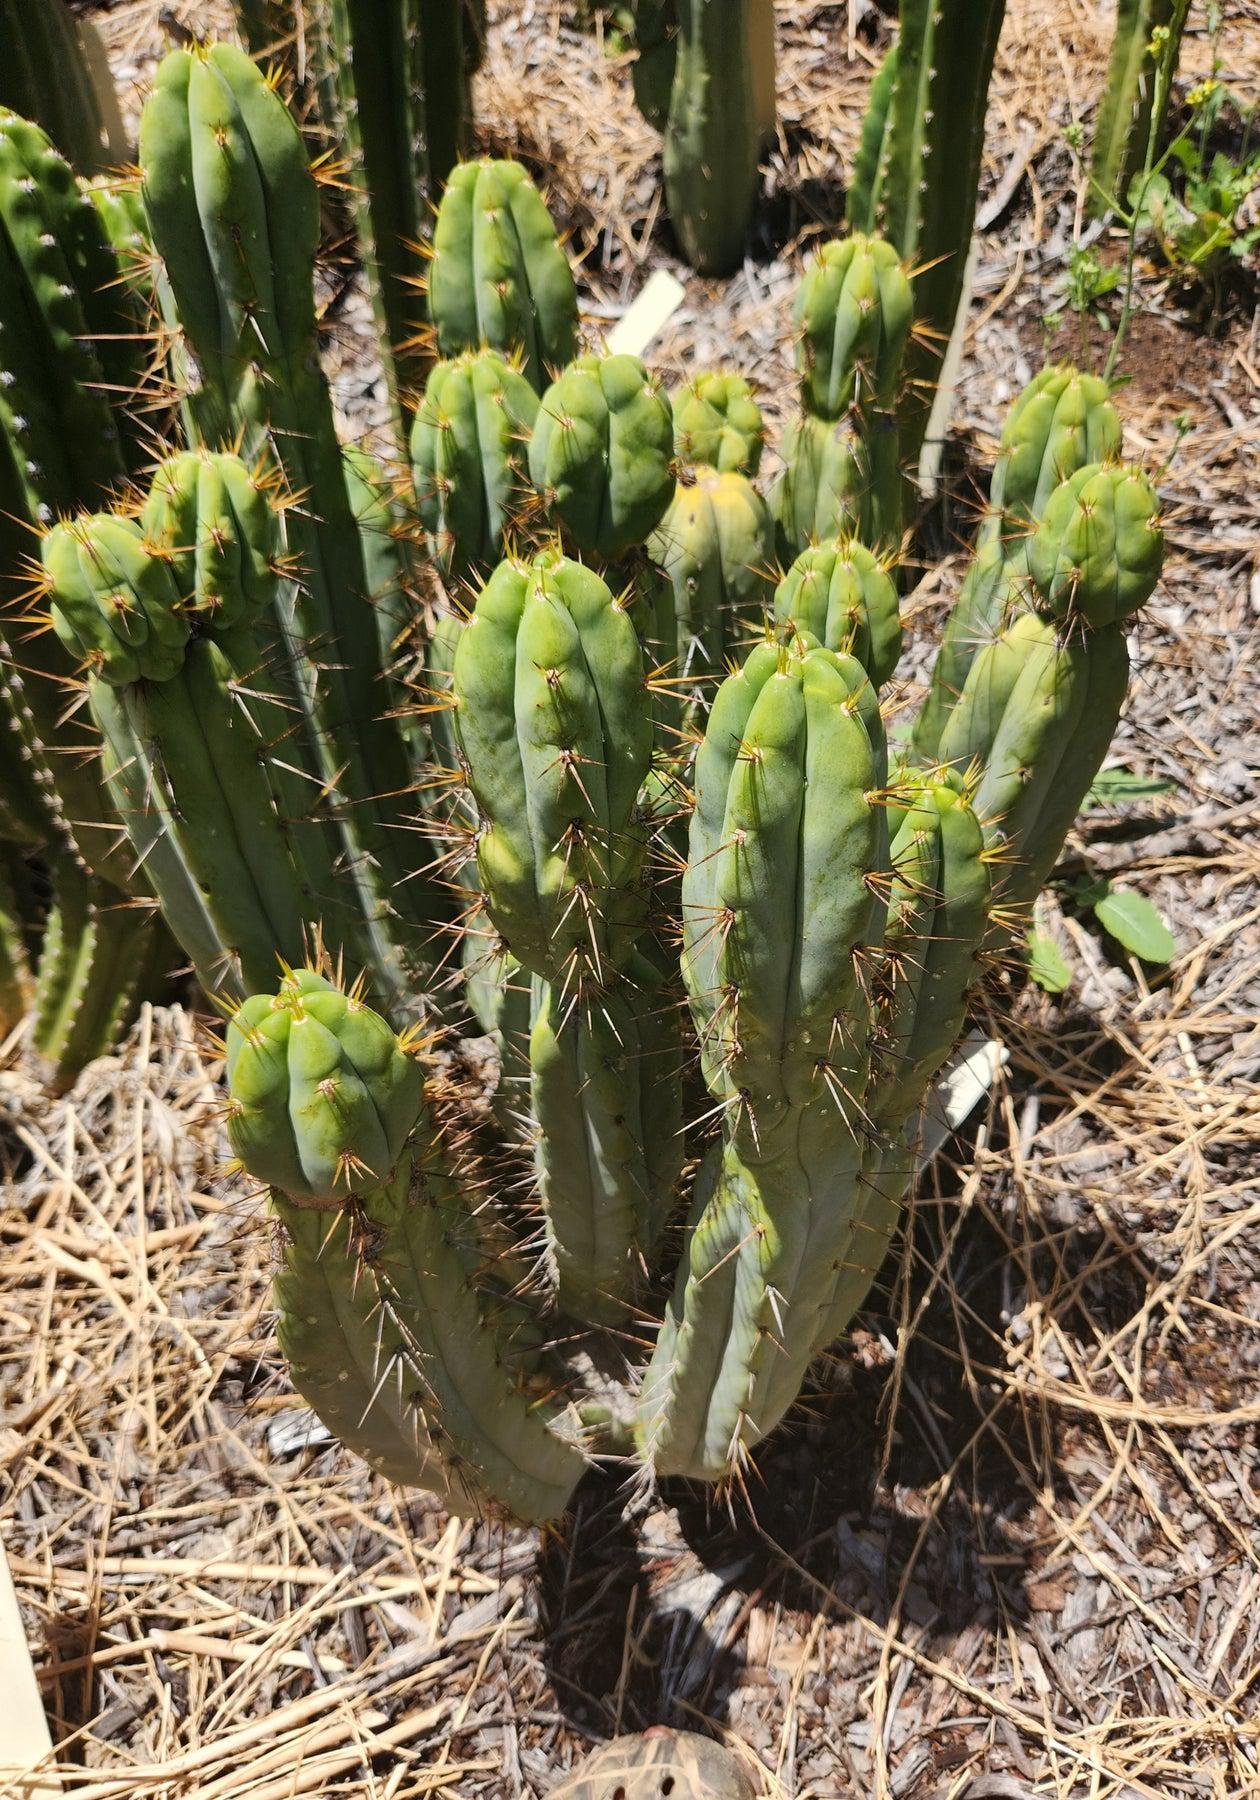 #EC28 EXACT Trichocereus OTB "Old Town Bridgesii" Cactus cutting 8-10"-Cactus - Large - Exact-The Succulent Source